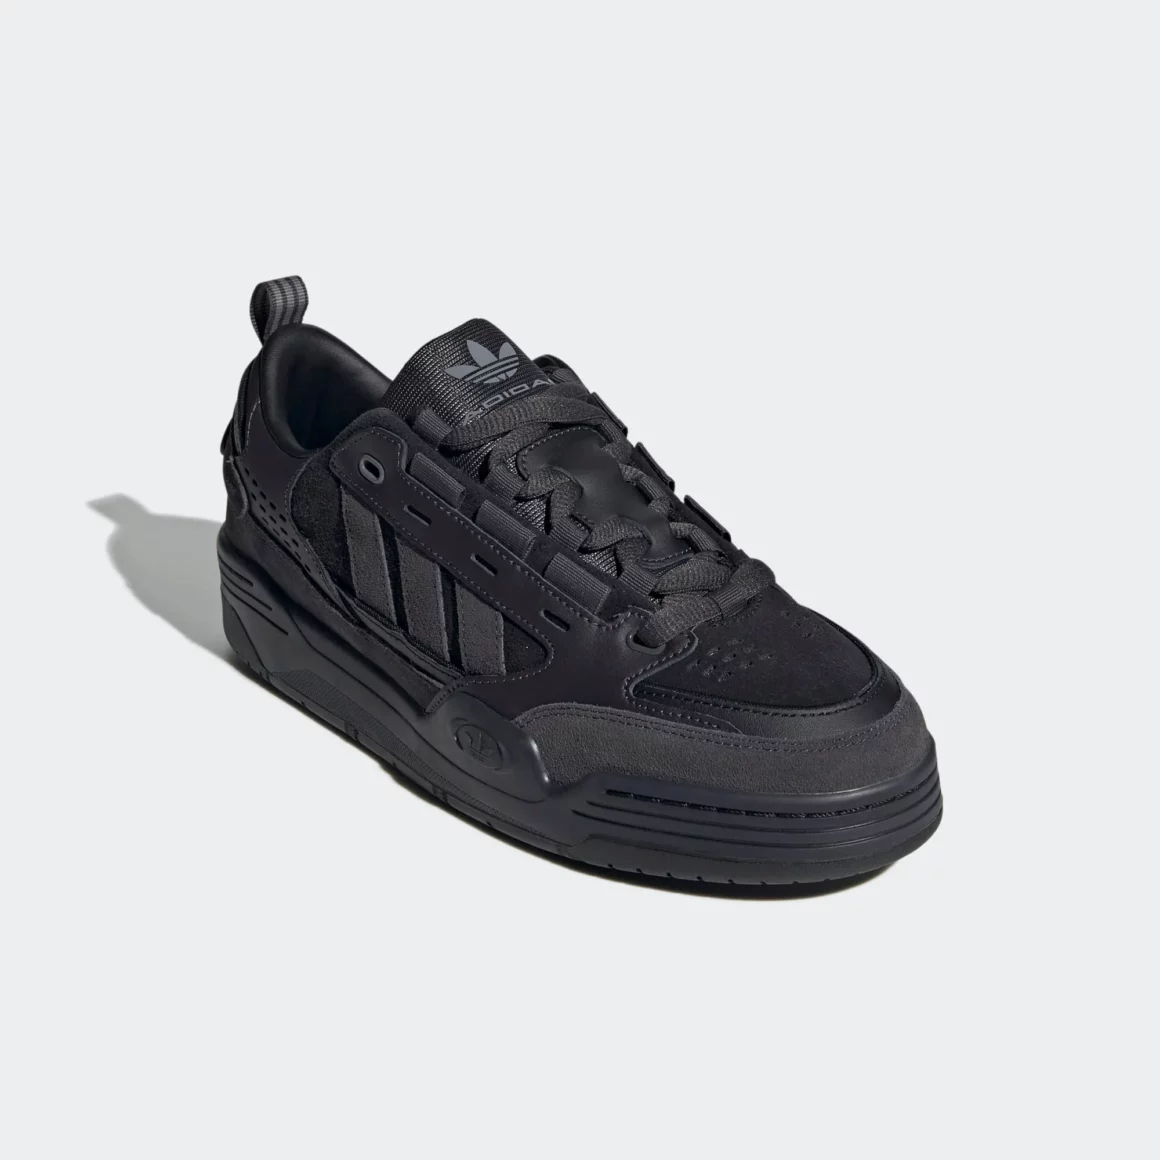 sneakers pour hommes à porter cet hiver adidas Adi 2000 noir